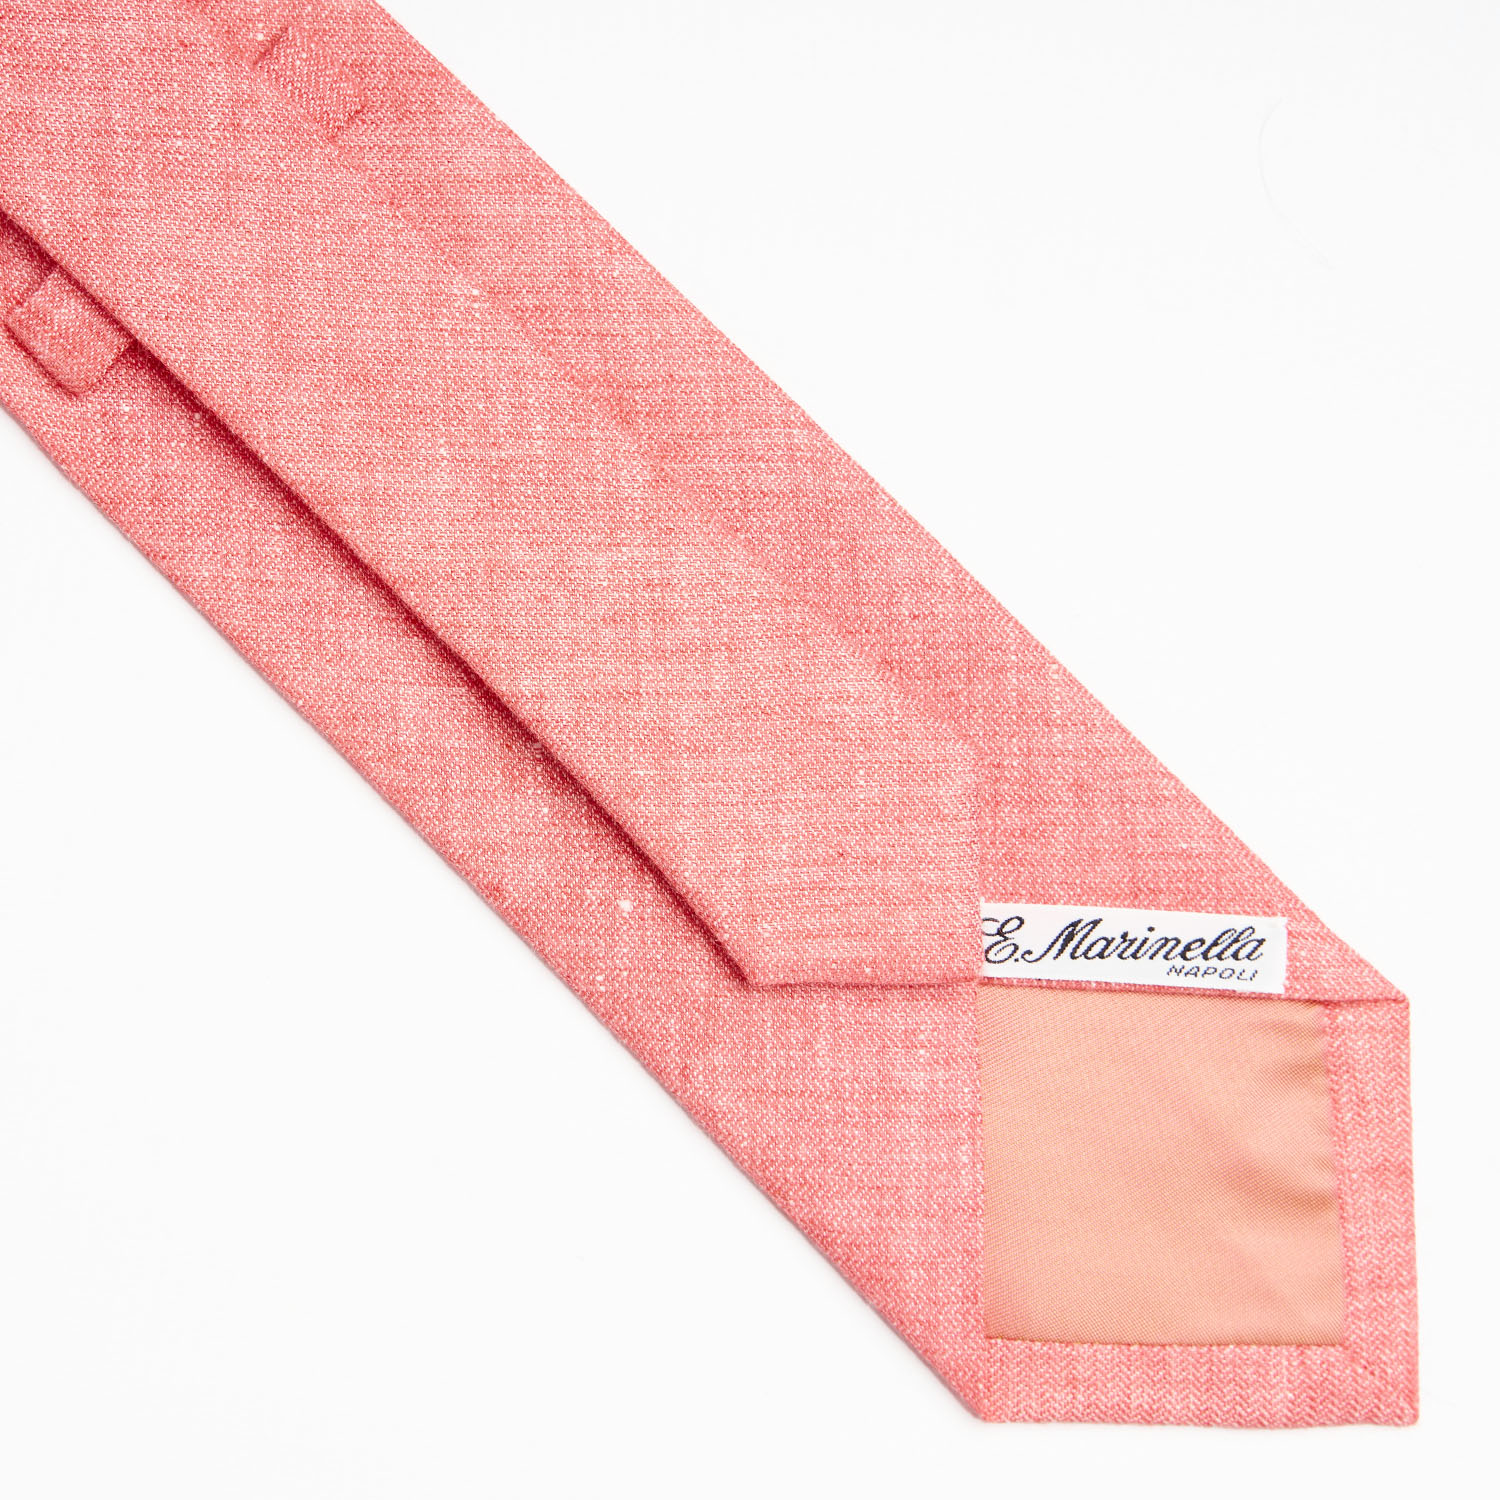 linen and cotton tie _ cravatta in lino e cotone